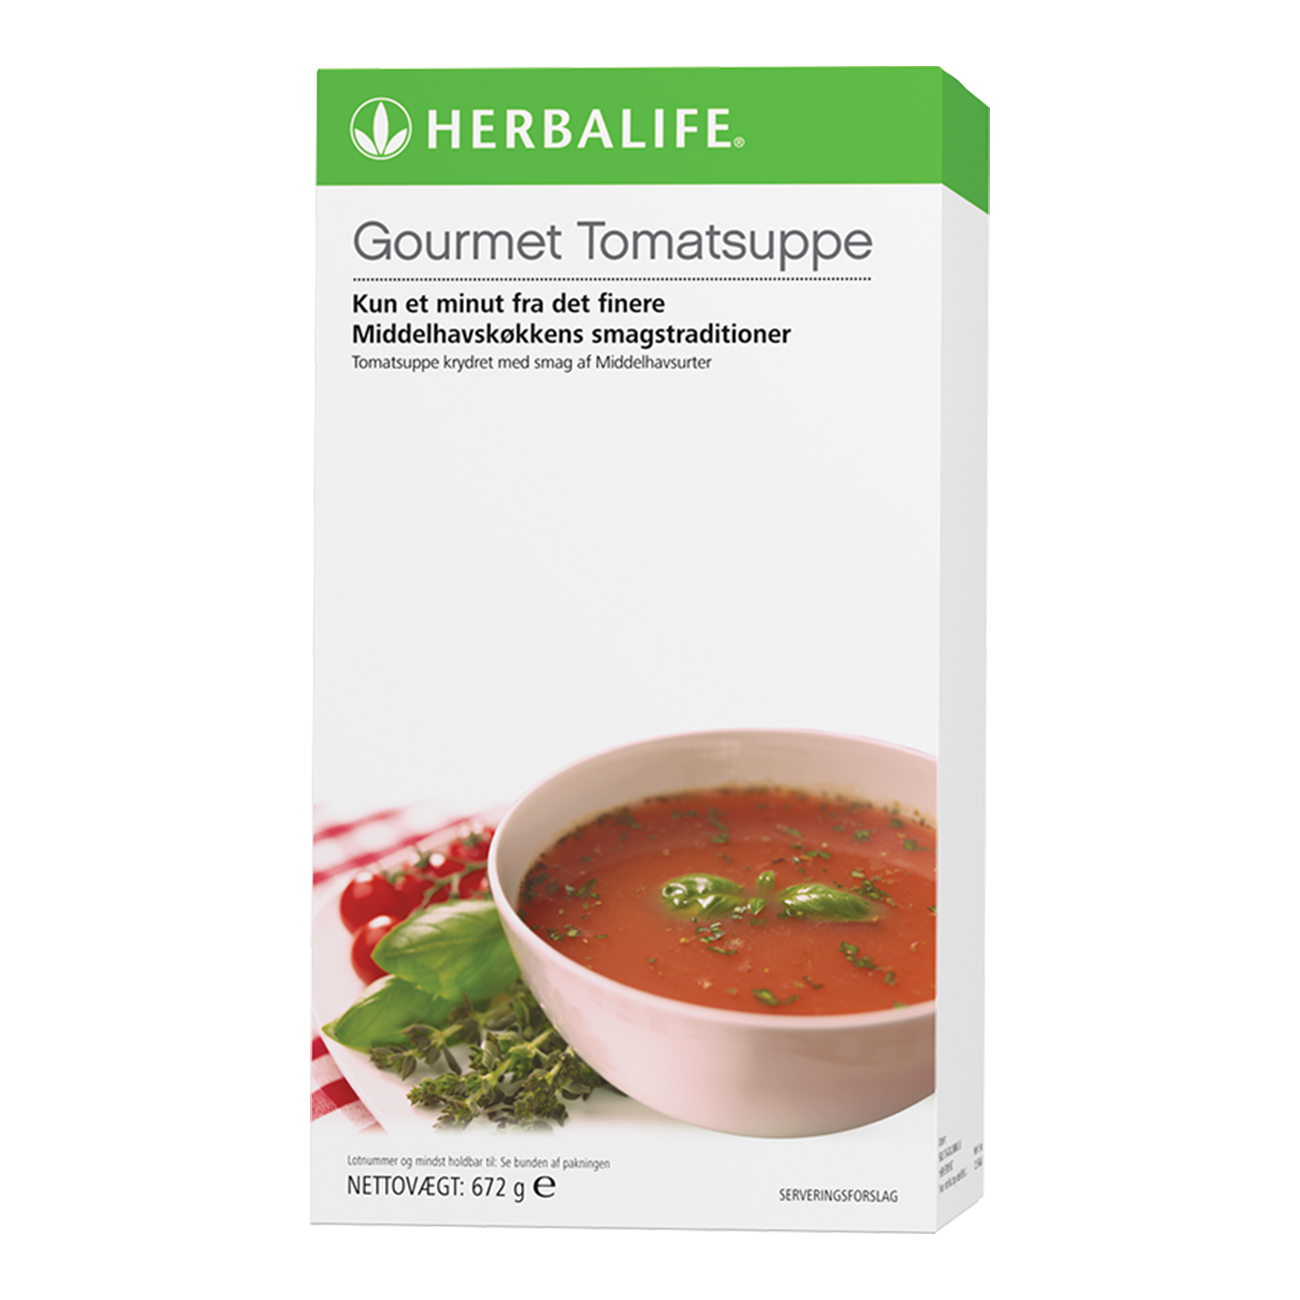 Gourmet Tomatsuppe produkt